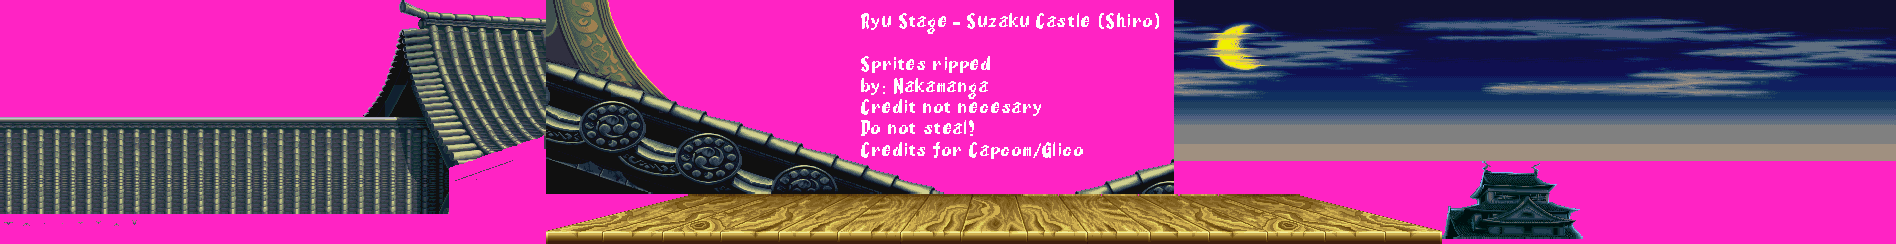 Street Fighter 2 - Pocky Edition - Ryu's Stage (Suzaku Castle)